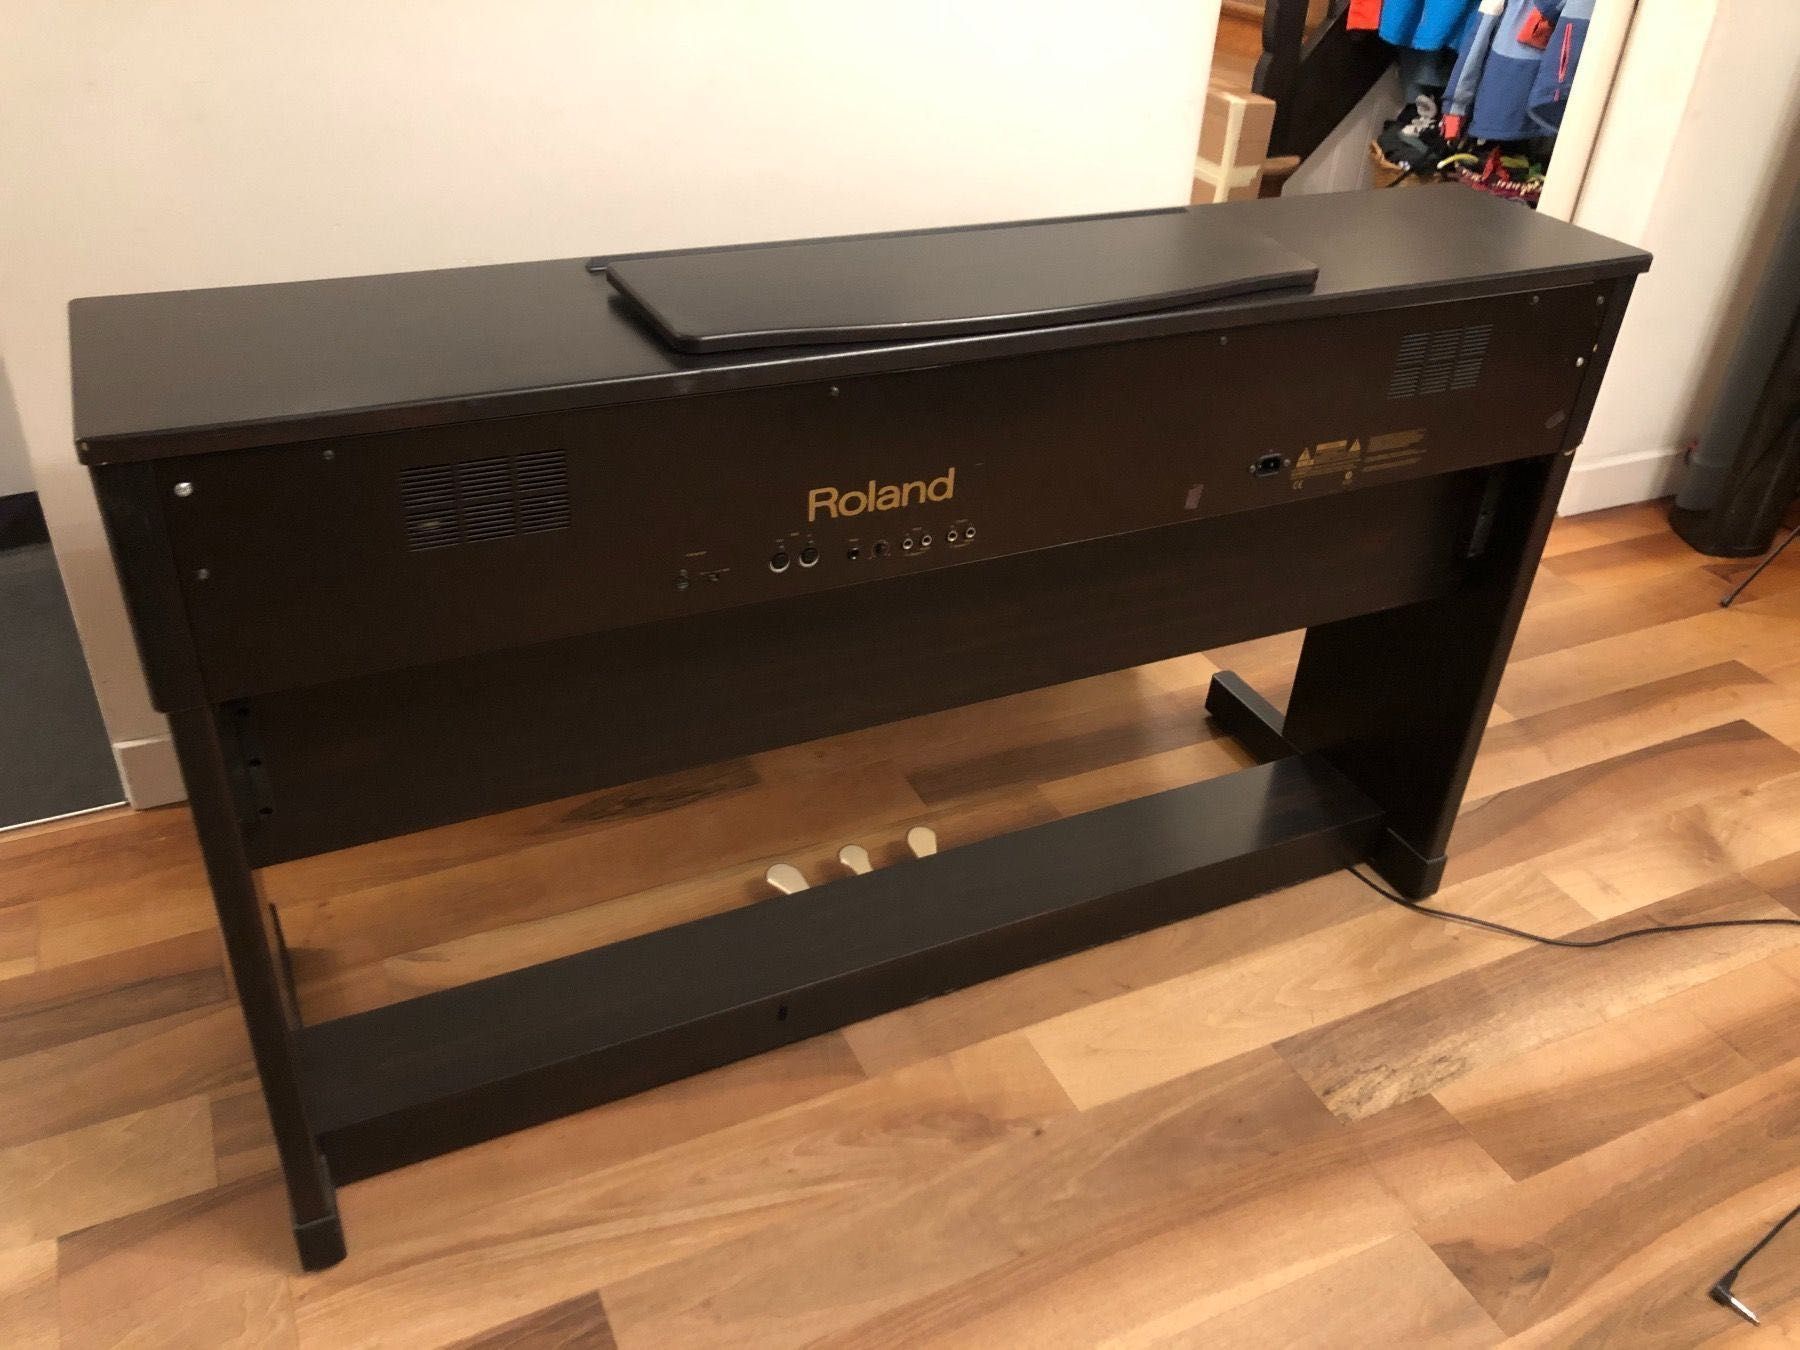 Piano Digital Roland